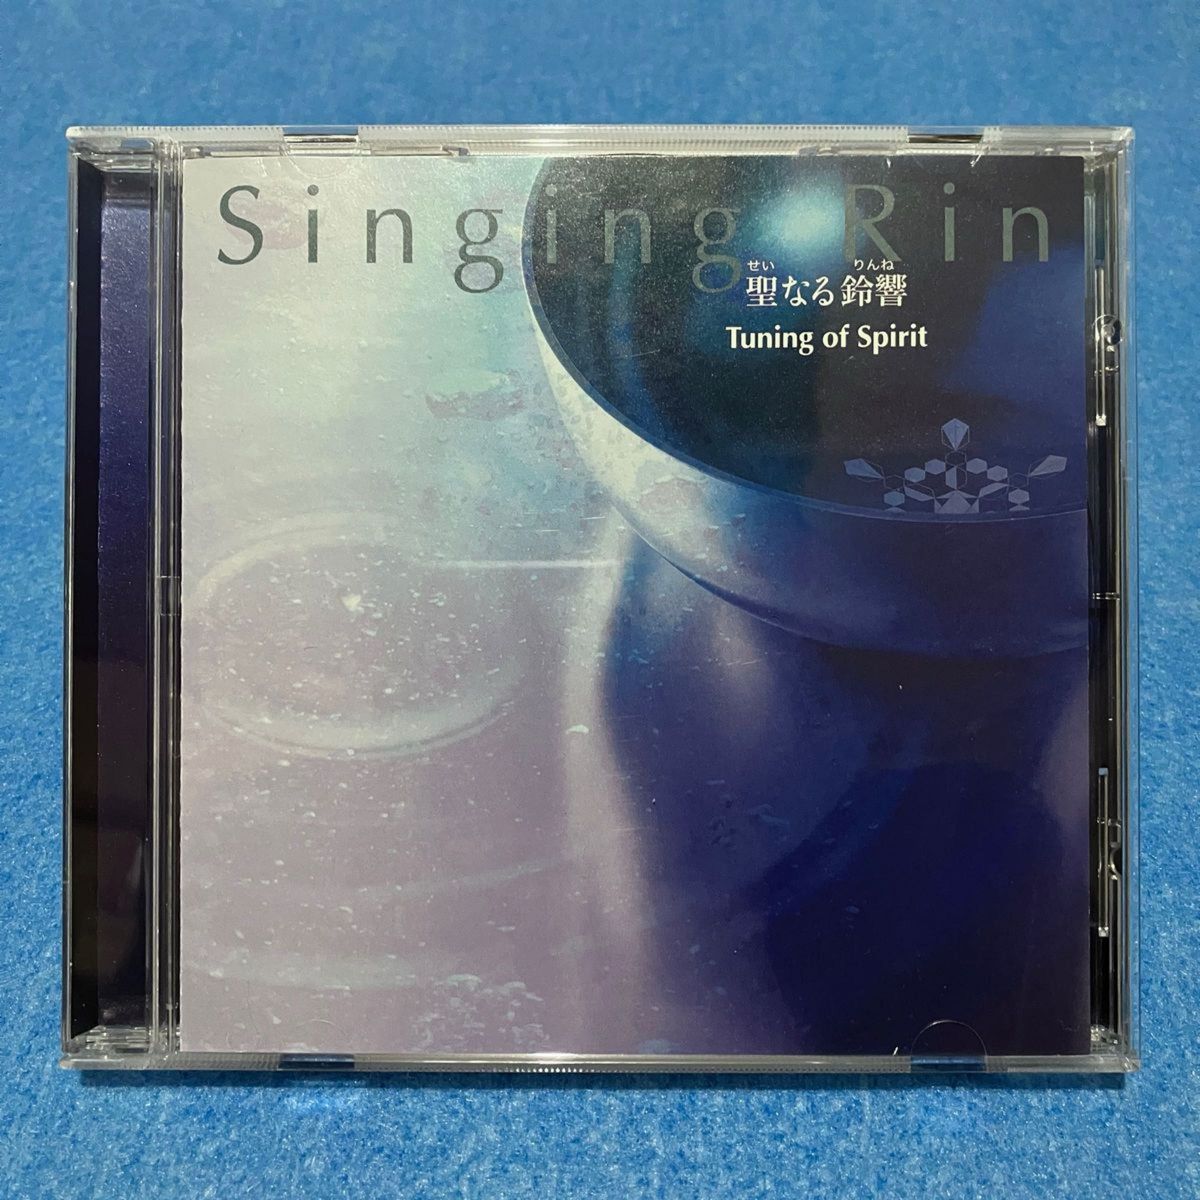 聖なる鈴響 Singing Rin 和真音 CDふ